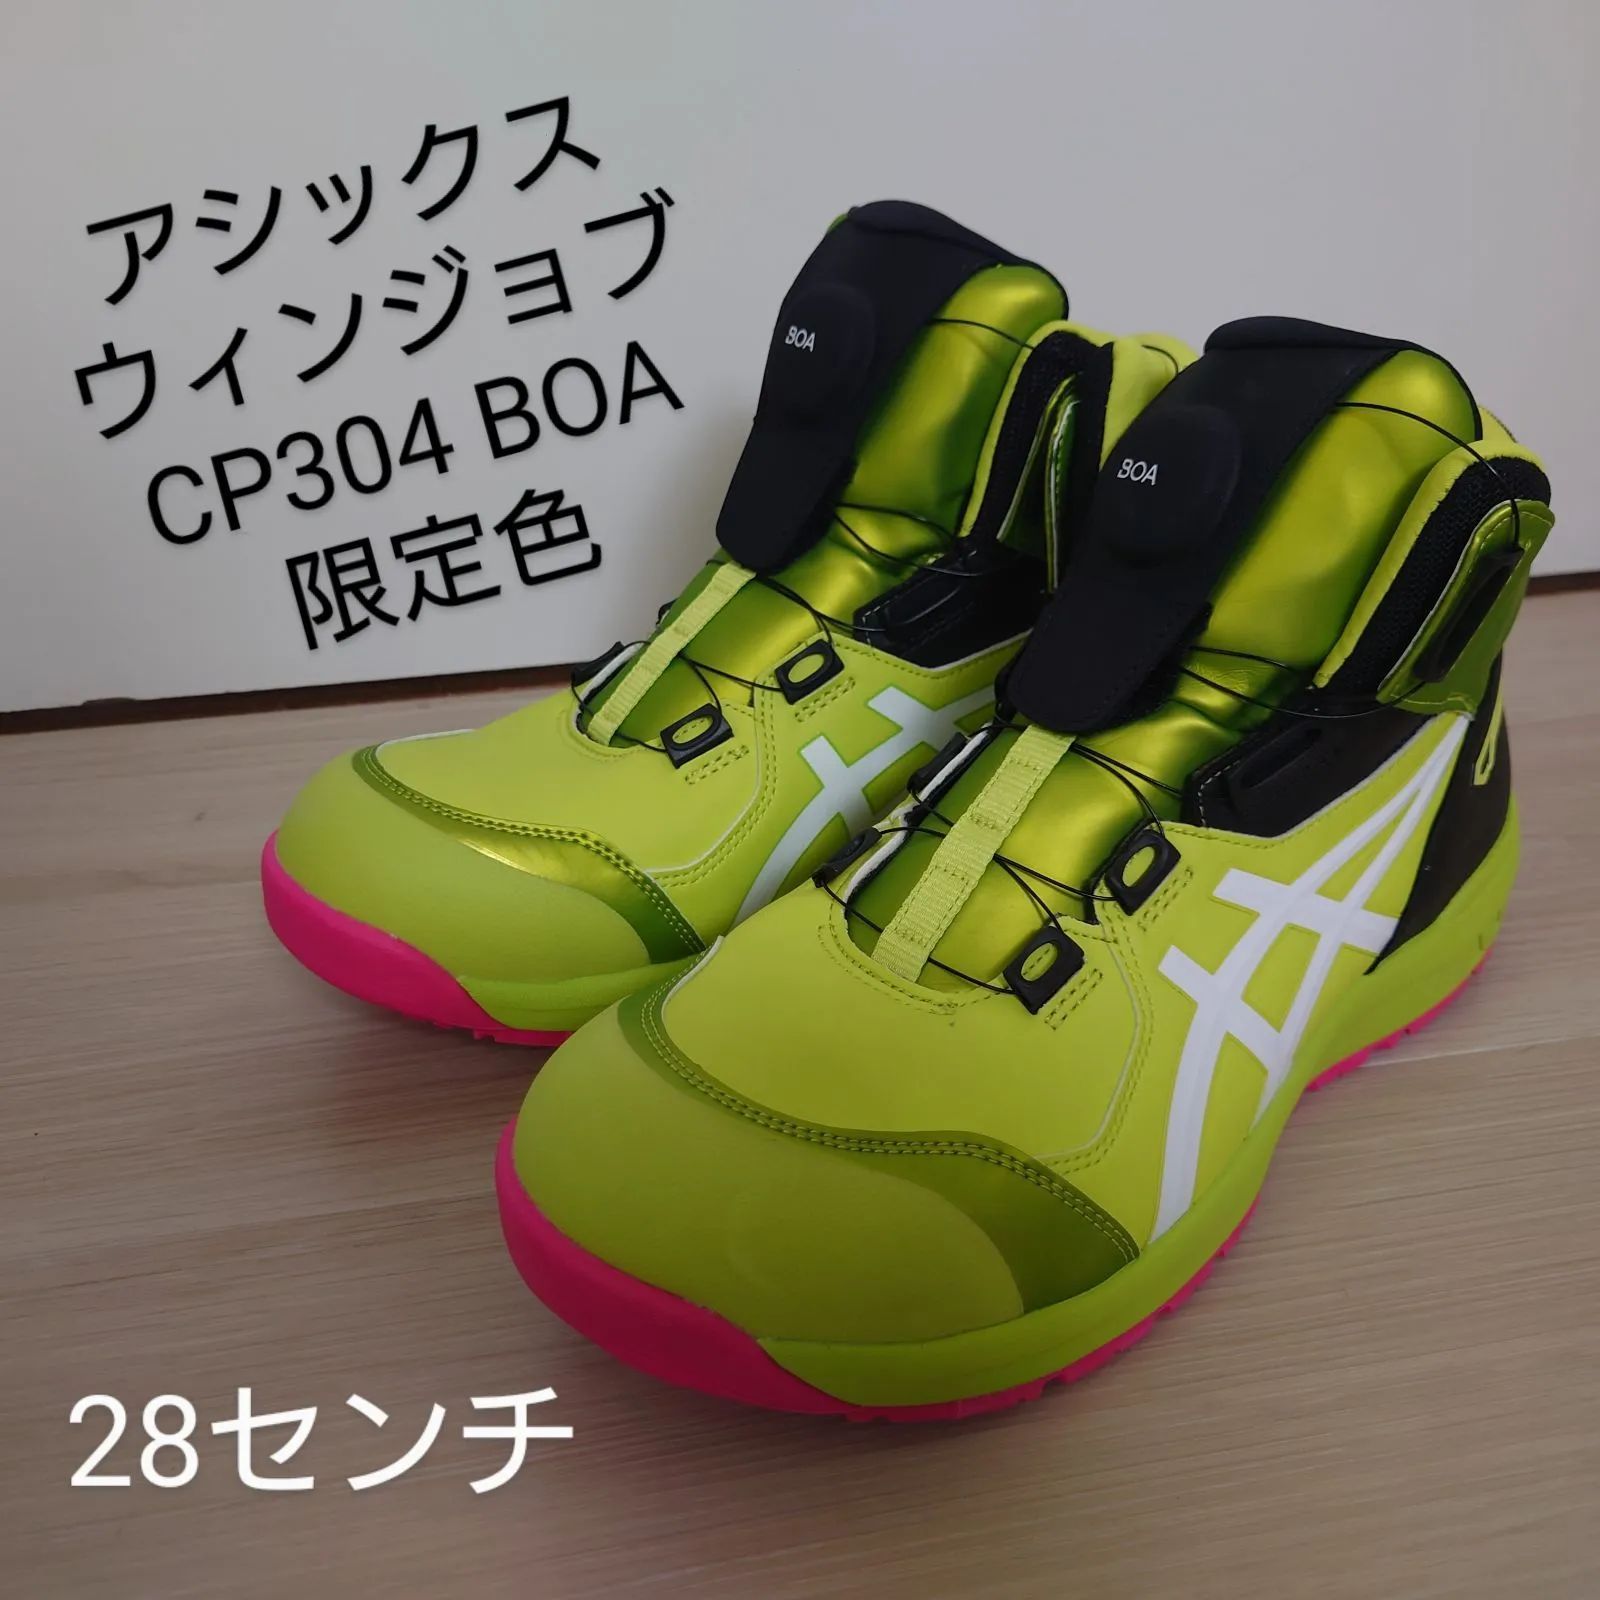 残りわずか【新品】26.5cmアシックス安全靴CP304 【限定色】ネオンライムネオンライム×ホワイト